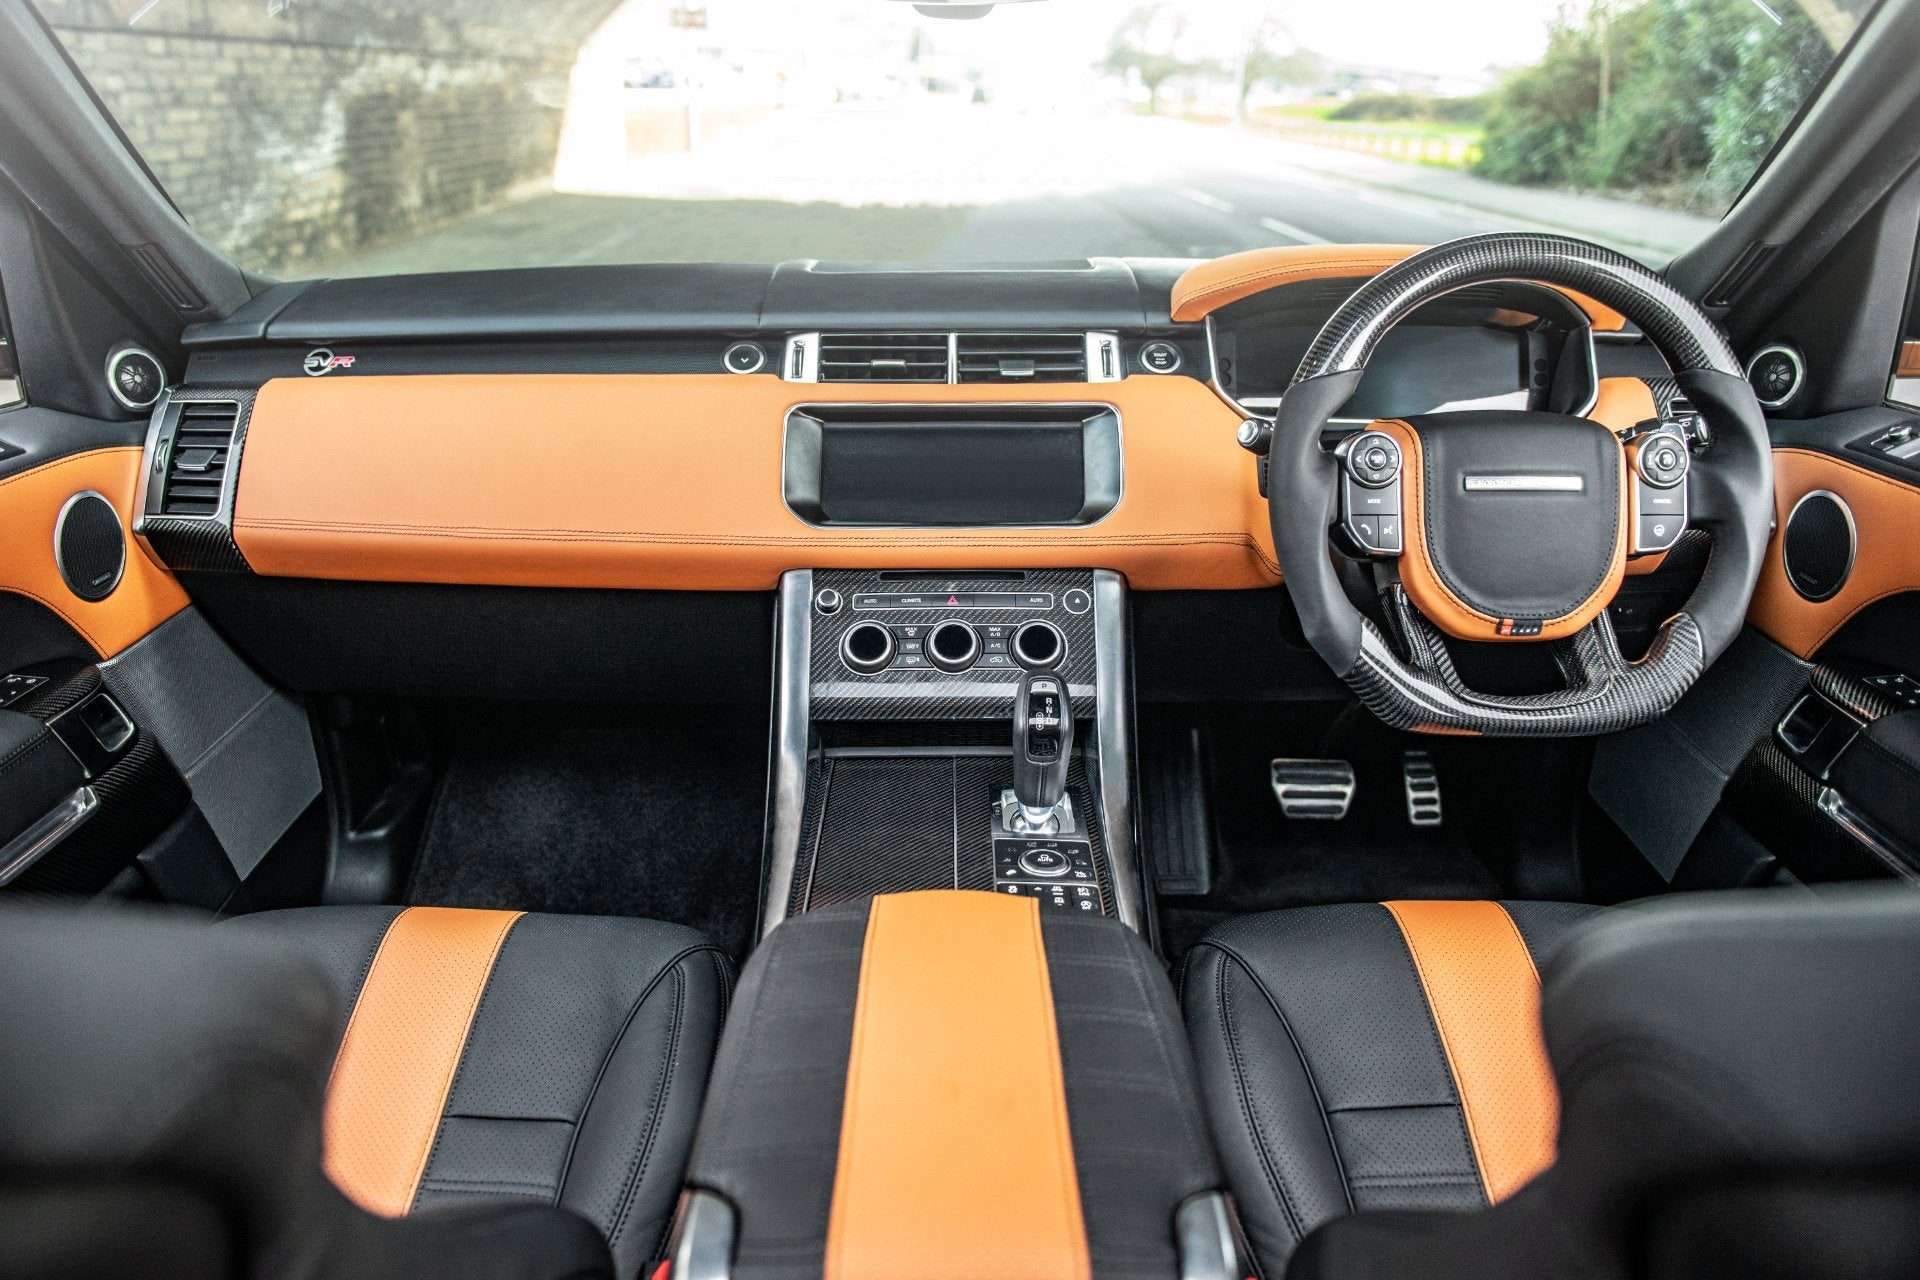 Range Rover Sport SVR (2018-Present) Dashboard & Instrument Binnacle